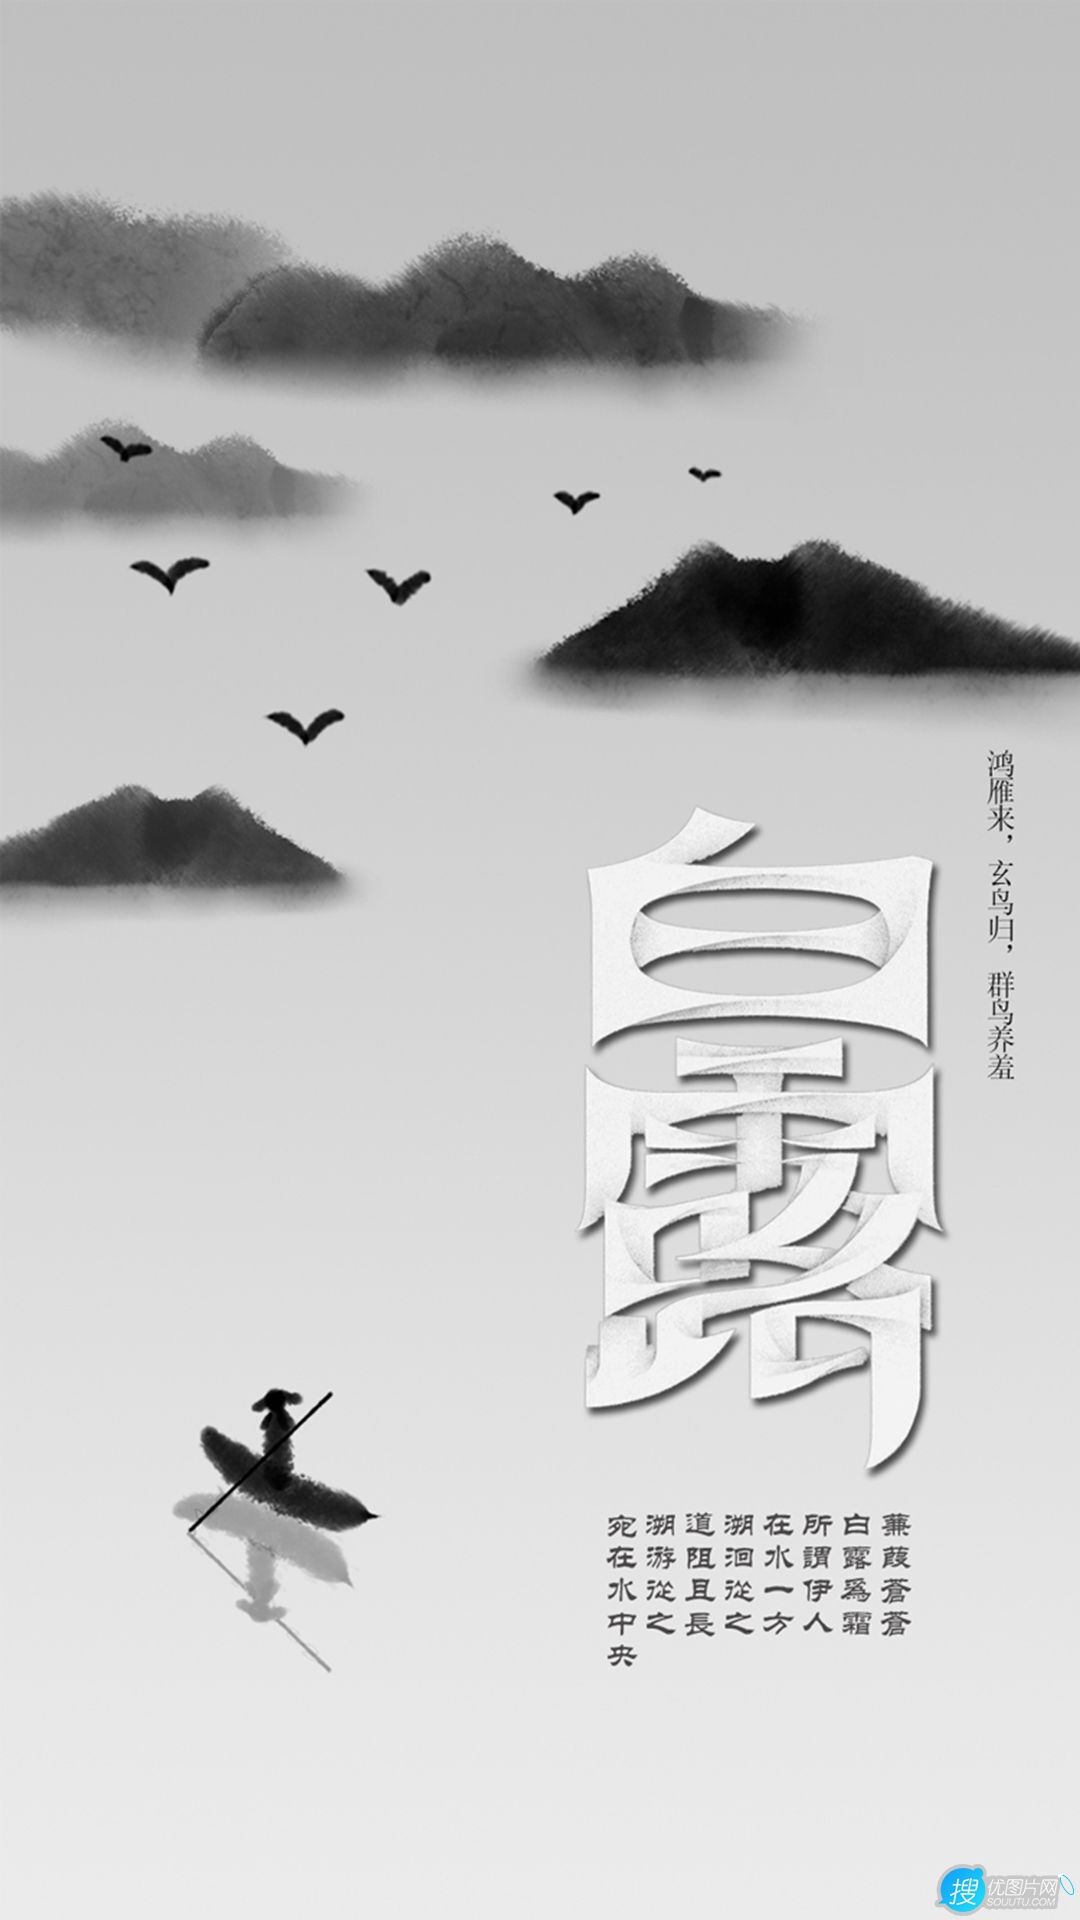 蝶舞花间，渔舟山水，白鹤祥瑞，唯美中国风，中国画主题白露节气手机壁纸第4张壁纸